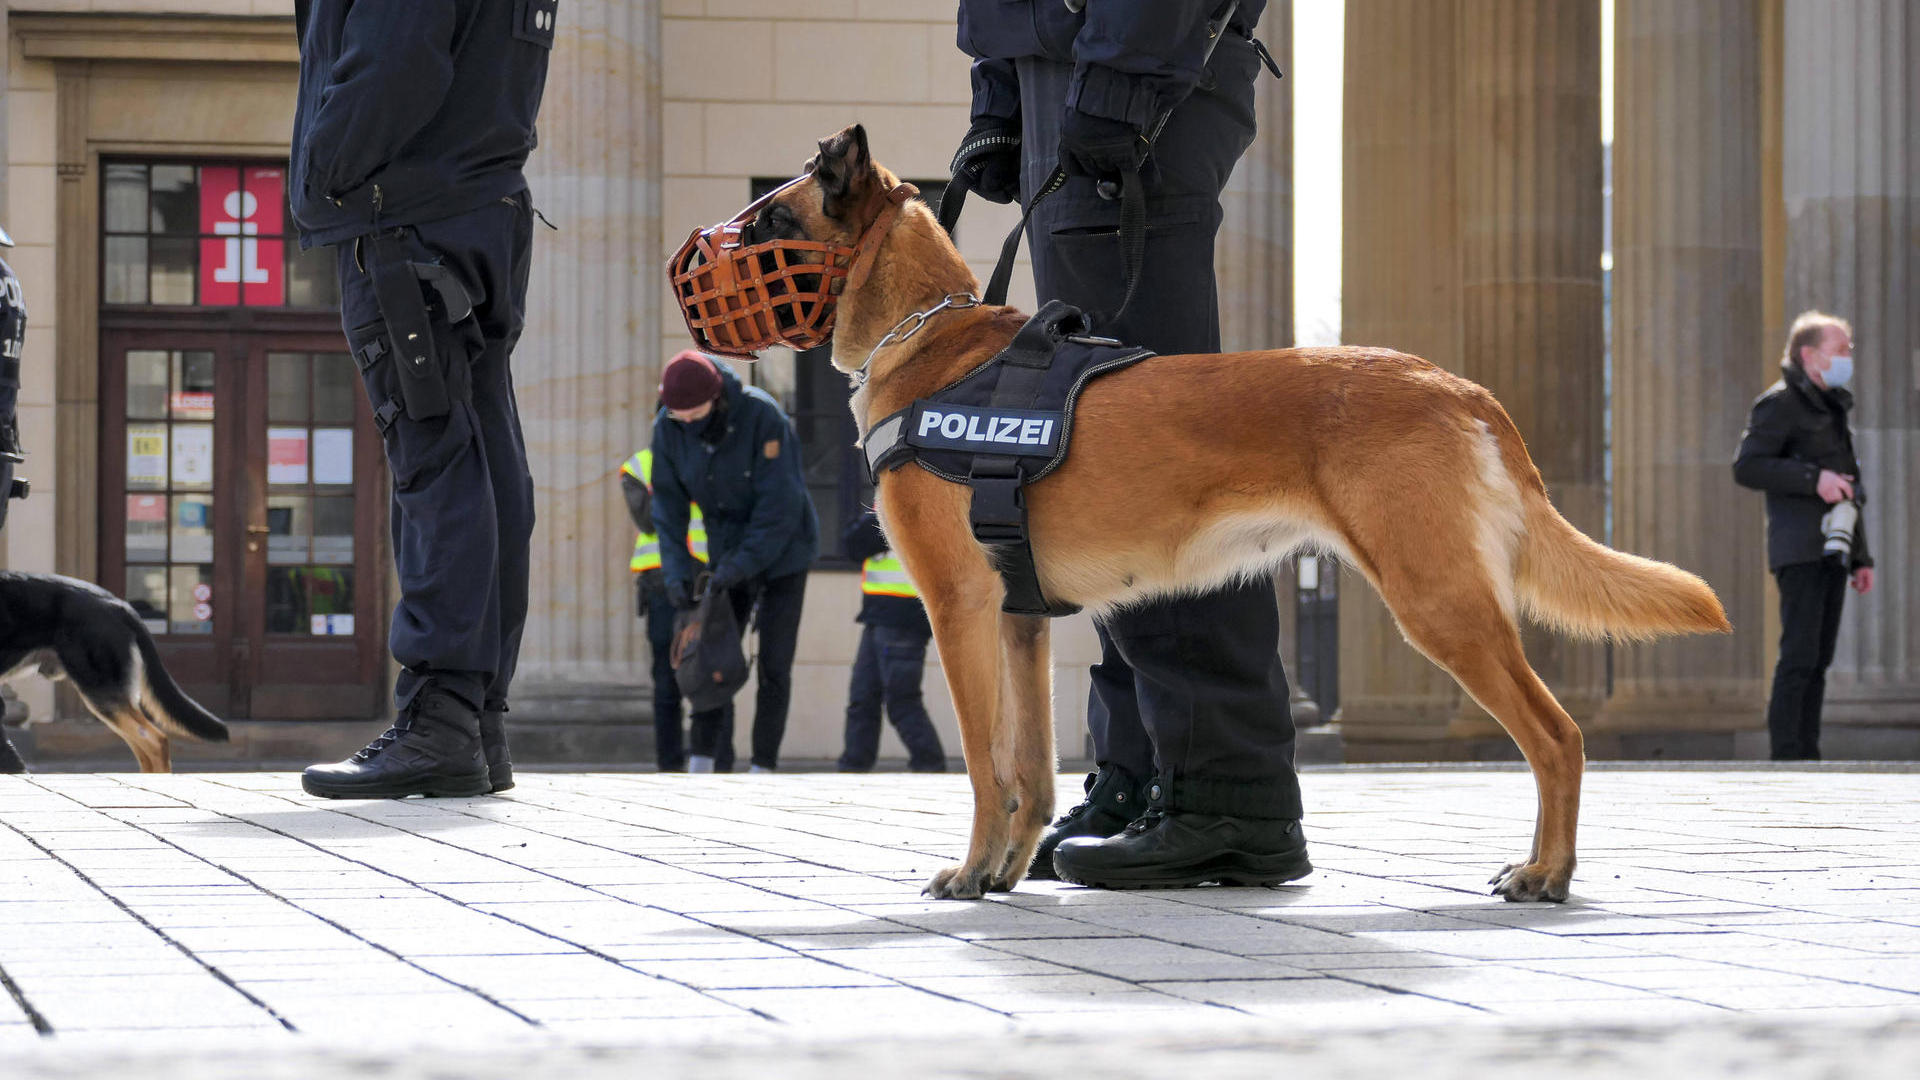 Оновлений закон про захист тварин: у Берліні від роботи відсторонили 49 поліцейських собак